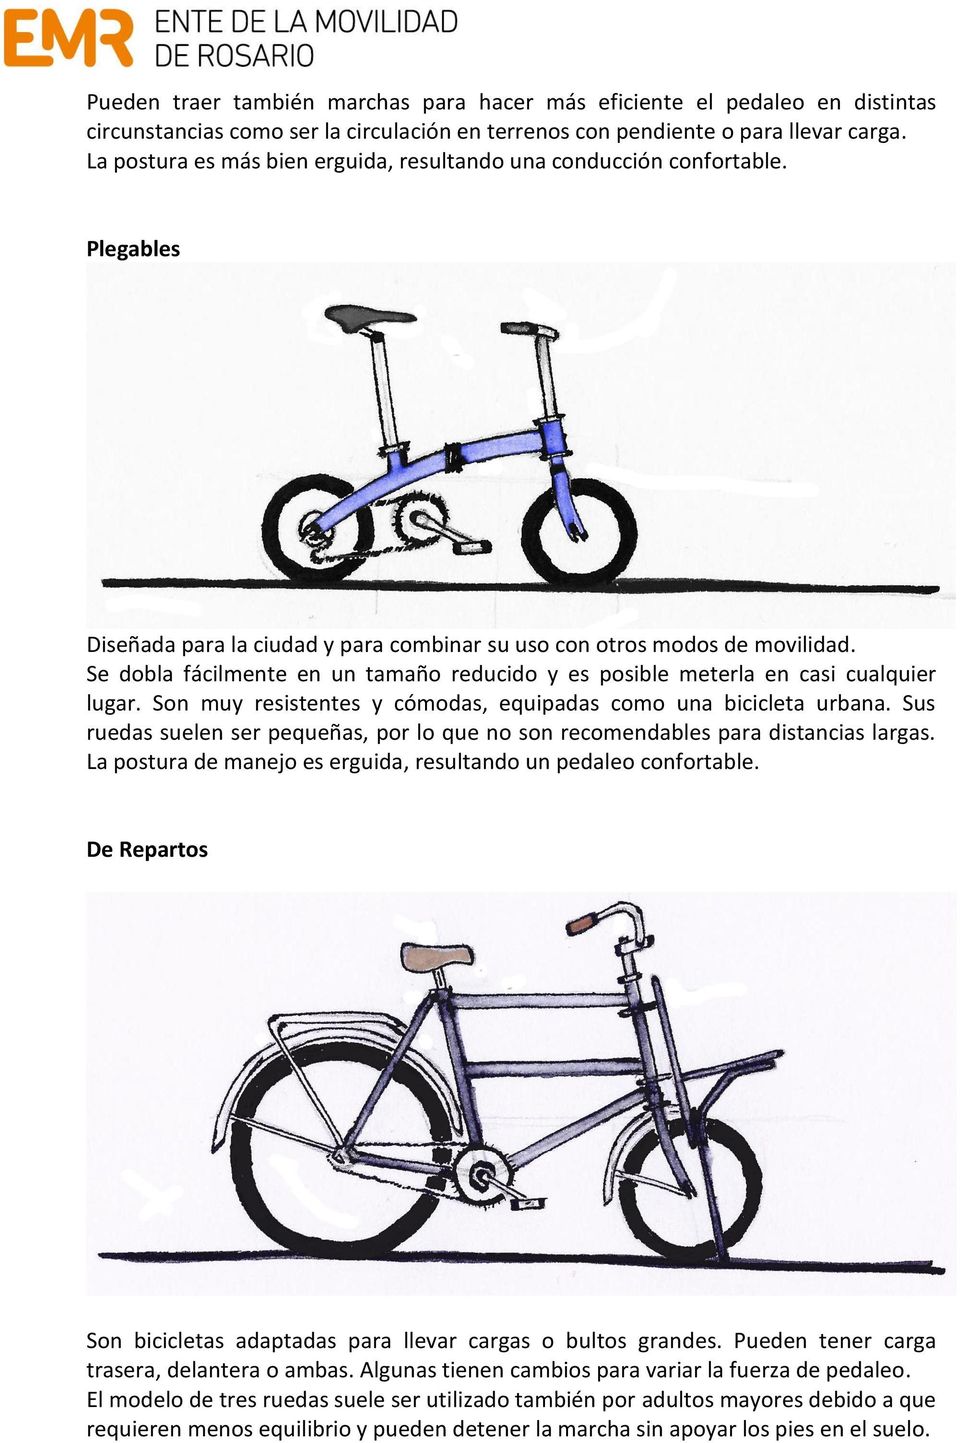 Se dobla fácilmente en un tamaño reducido y es posible meterla en casi cualquier lugar. Son muy resistentes y cómodas, equipadas como una bicicleta urbana.